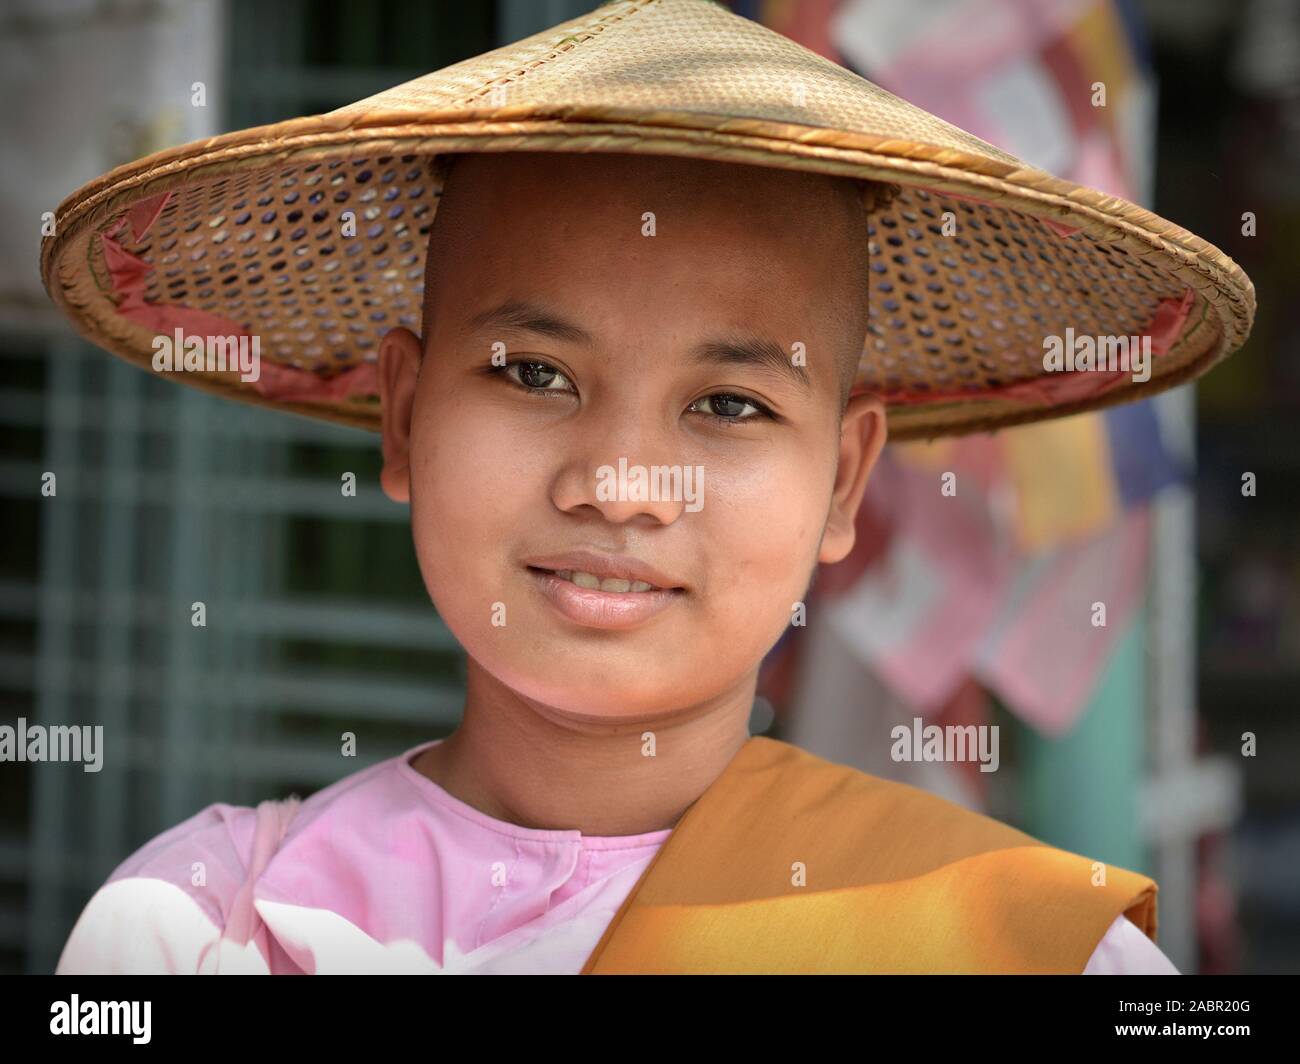 La nonne bouddhiste birman jeune asiatique porte un chapeau de paille conique et sourit pour la photo. Banque D'Images